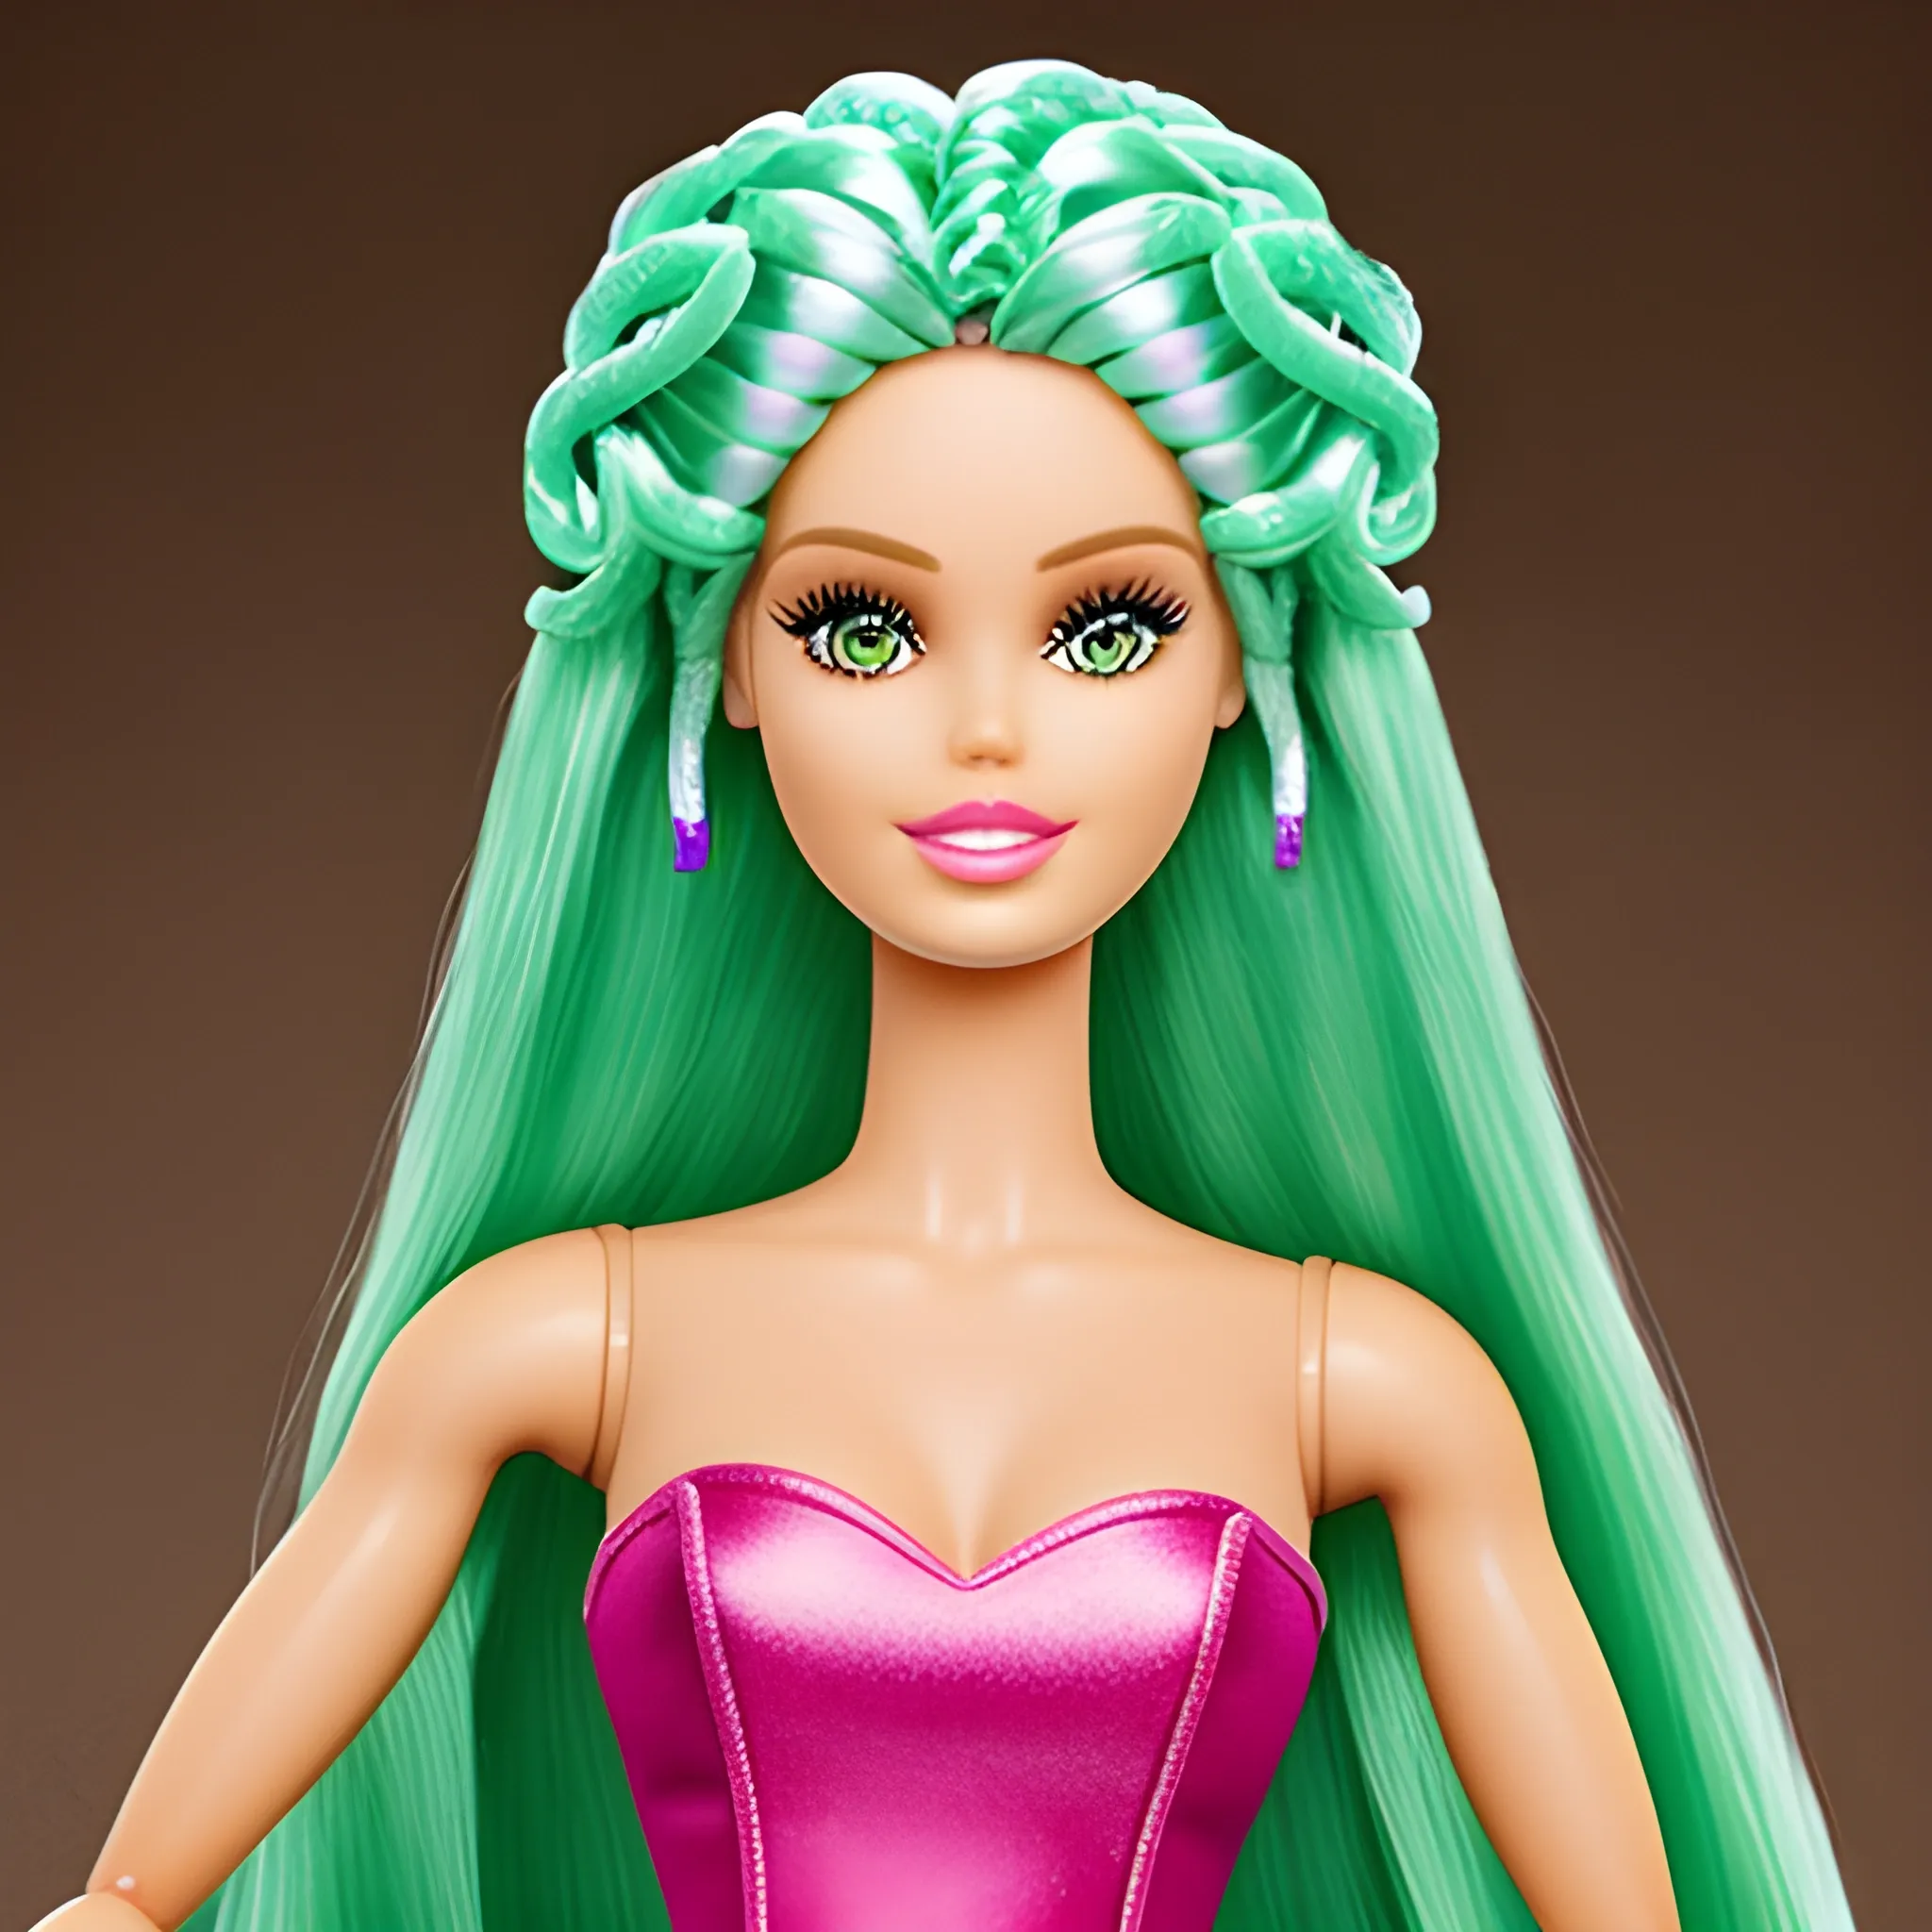 barbie doll with medusa head